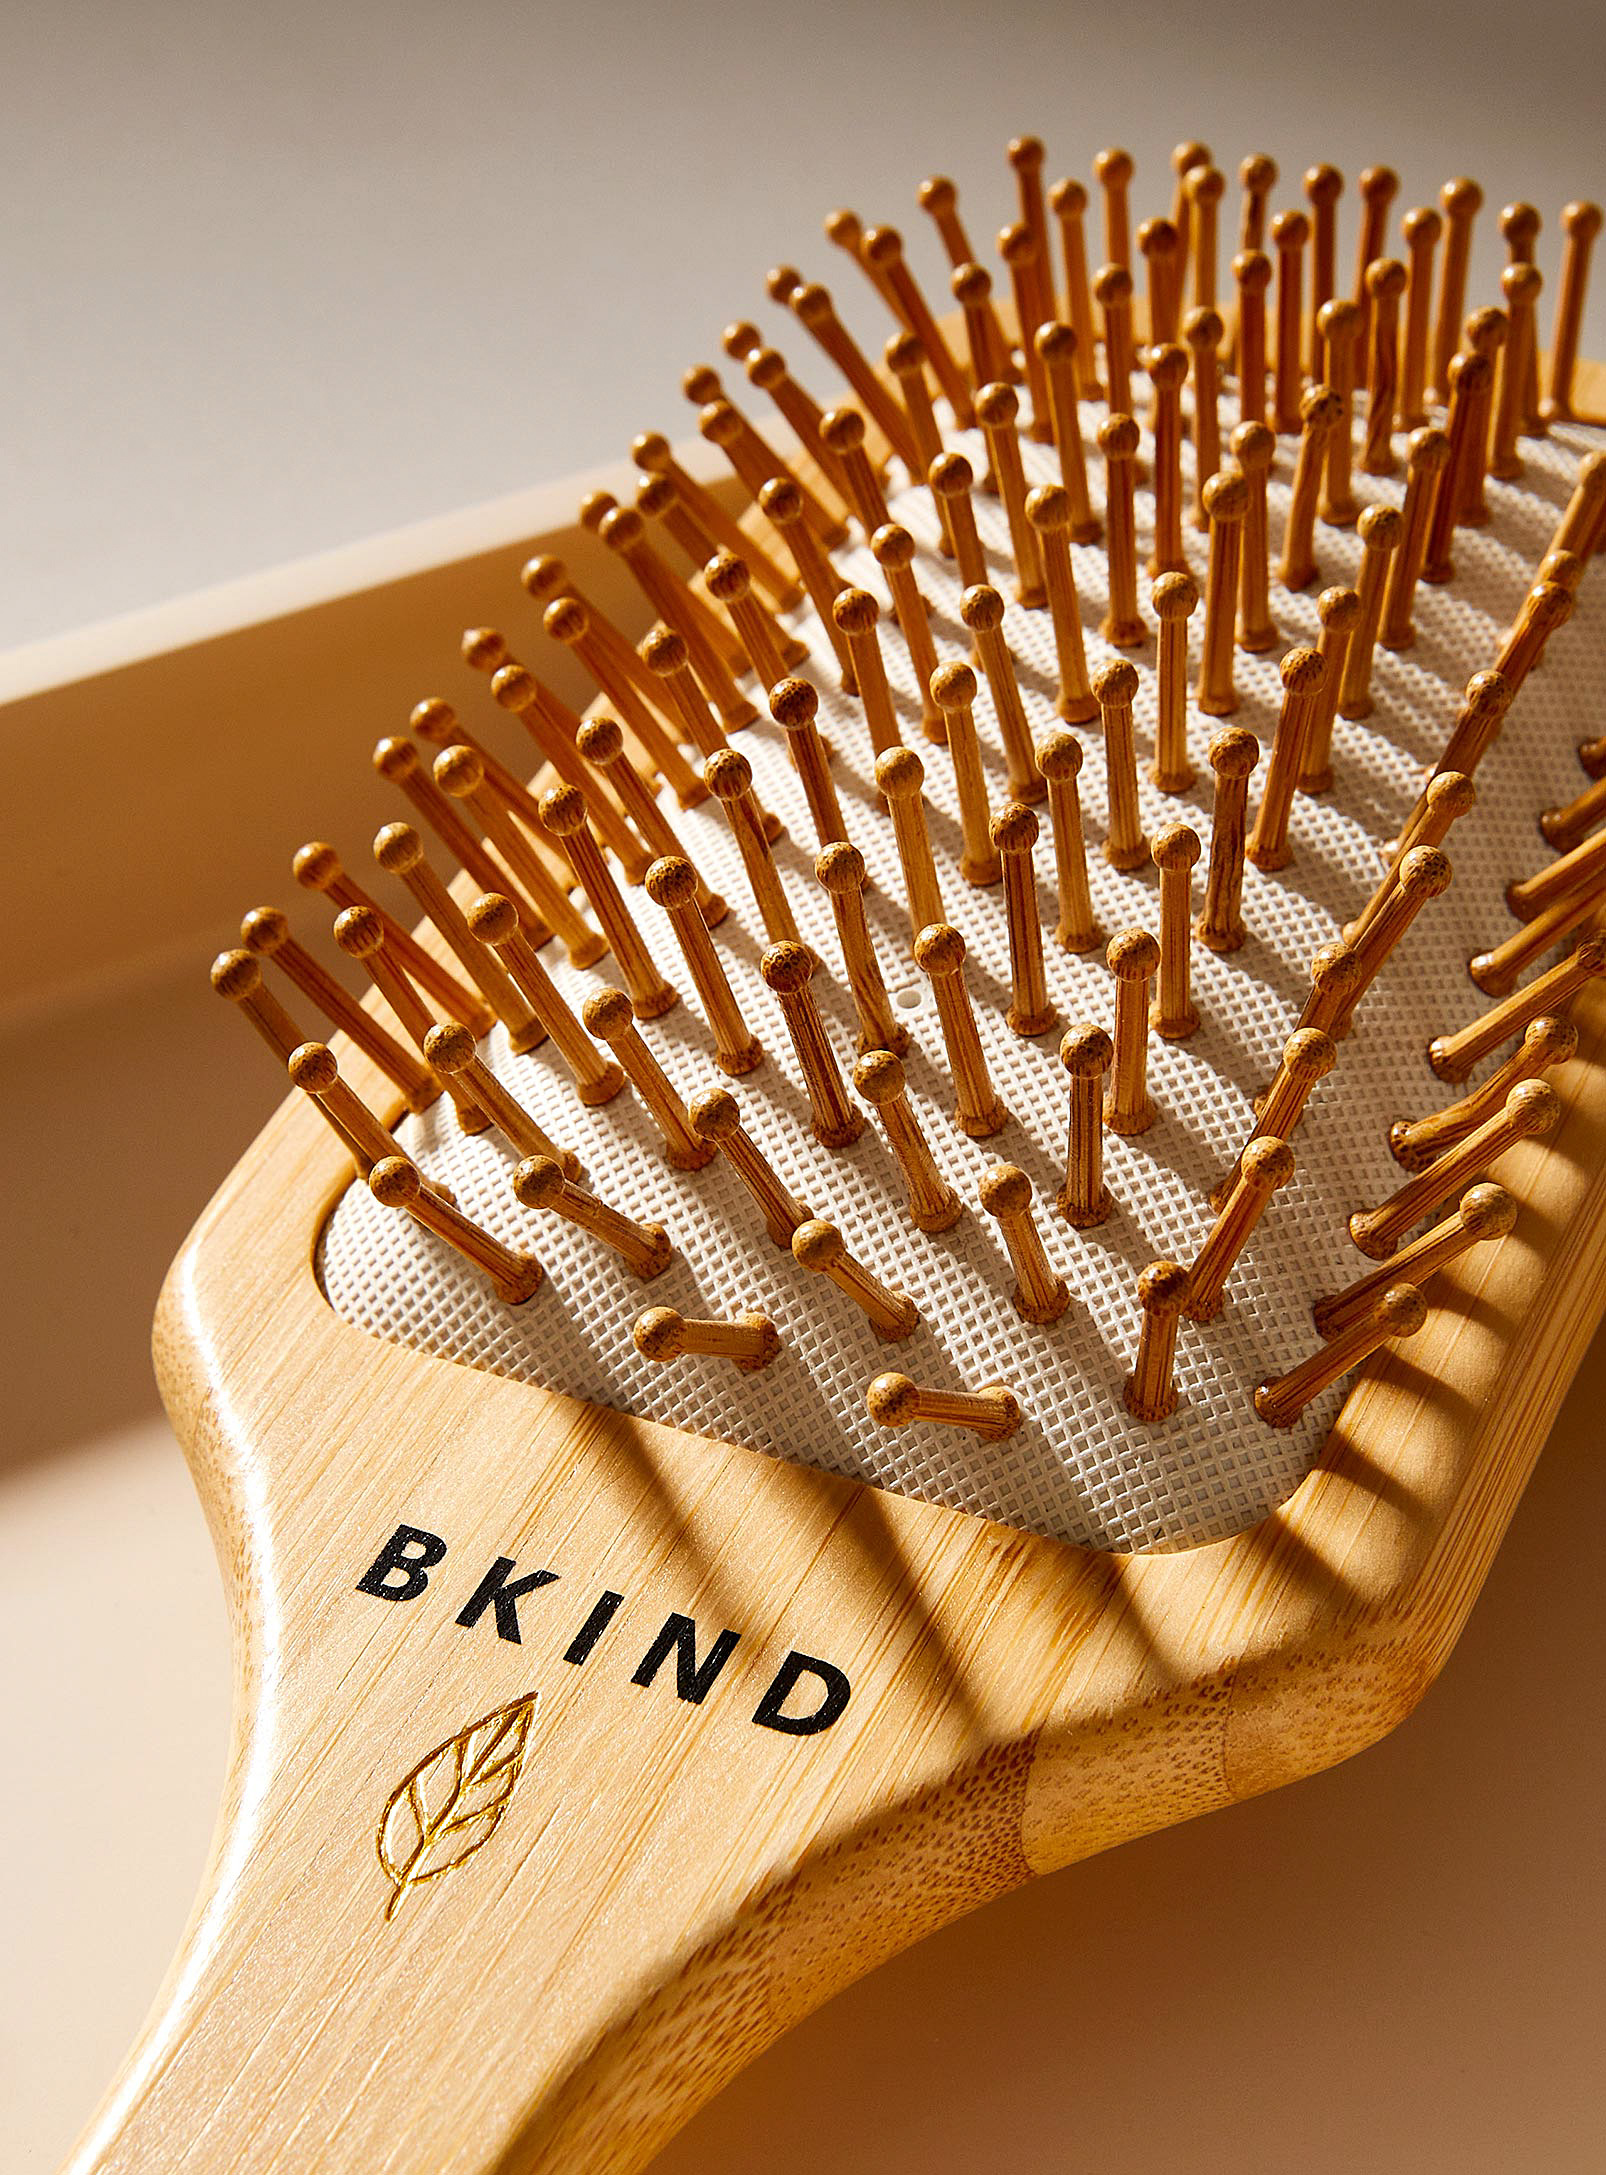 BKIND - La brosse à cheveux en bambou